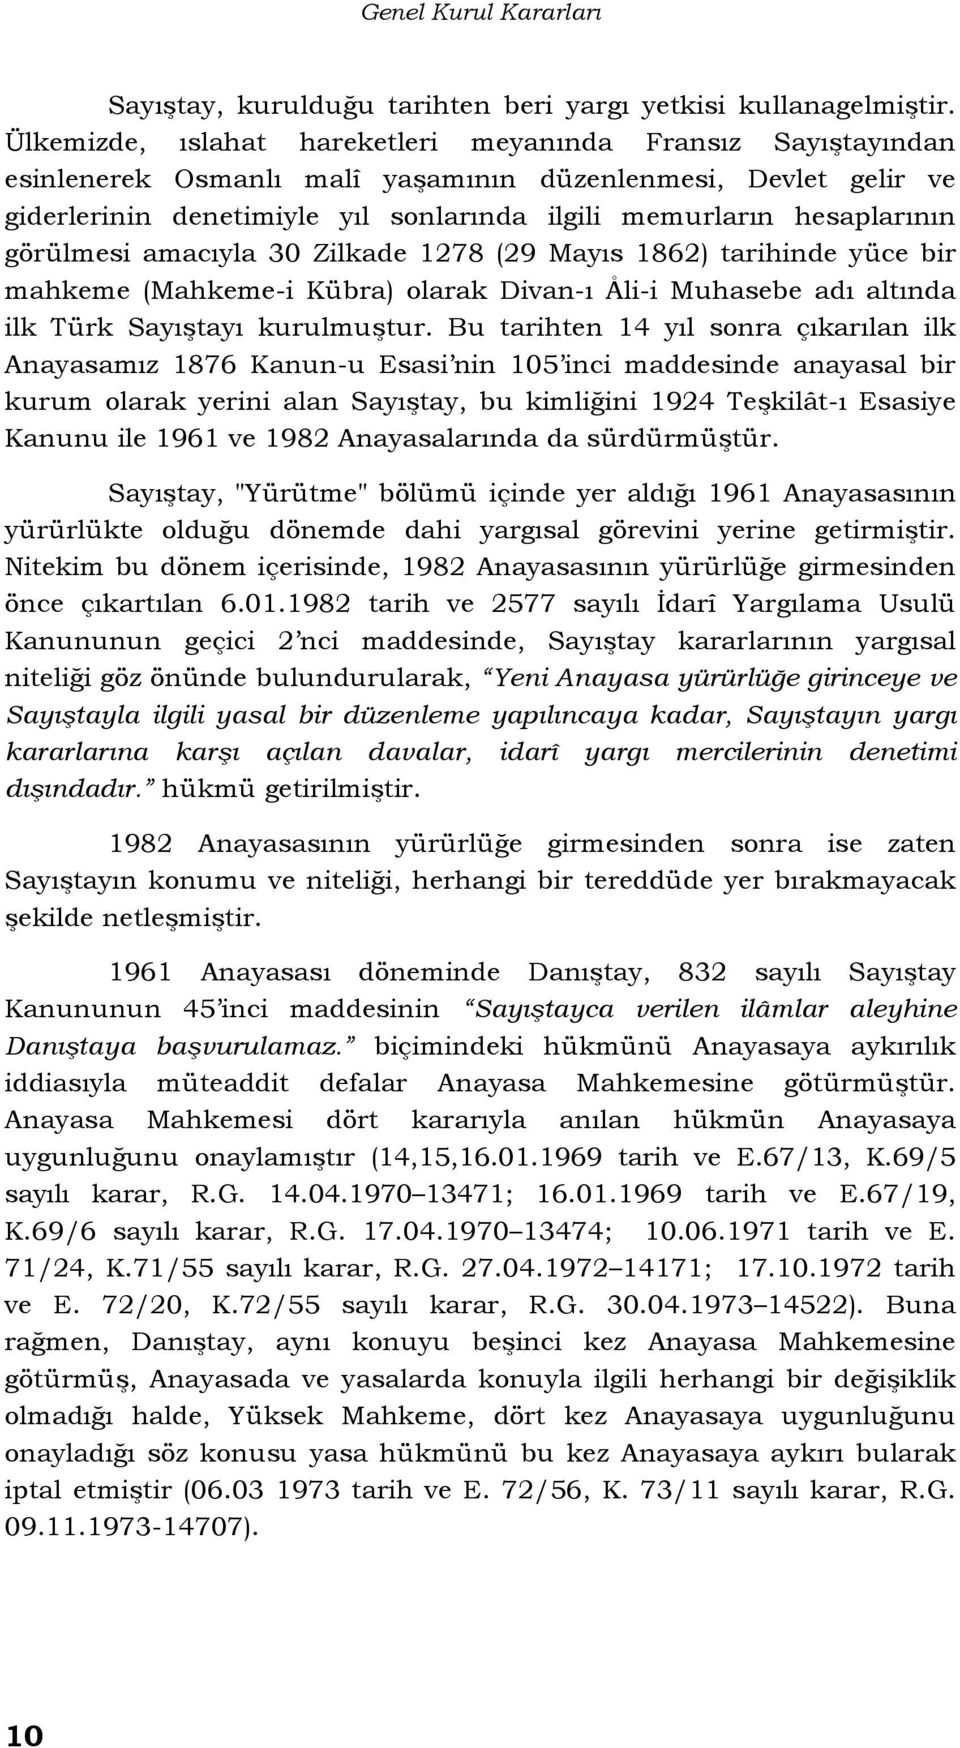 görülmesi amacıyla 30 Zilkade 1278 (29 Mayıs 1862) tarihinde yüce bir mahkeme (Mahkeme-i Kübra) olarak Divan-ı Åli-i Muhasebe adı altında ilk Türk Sayıştayı kurulmuştur.